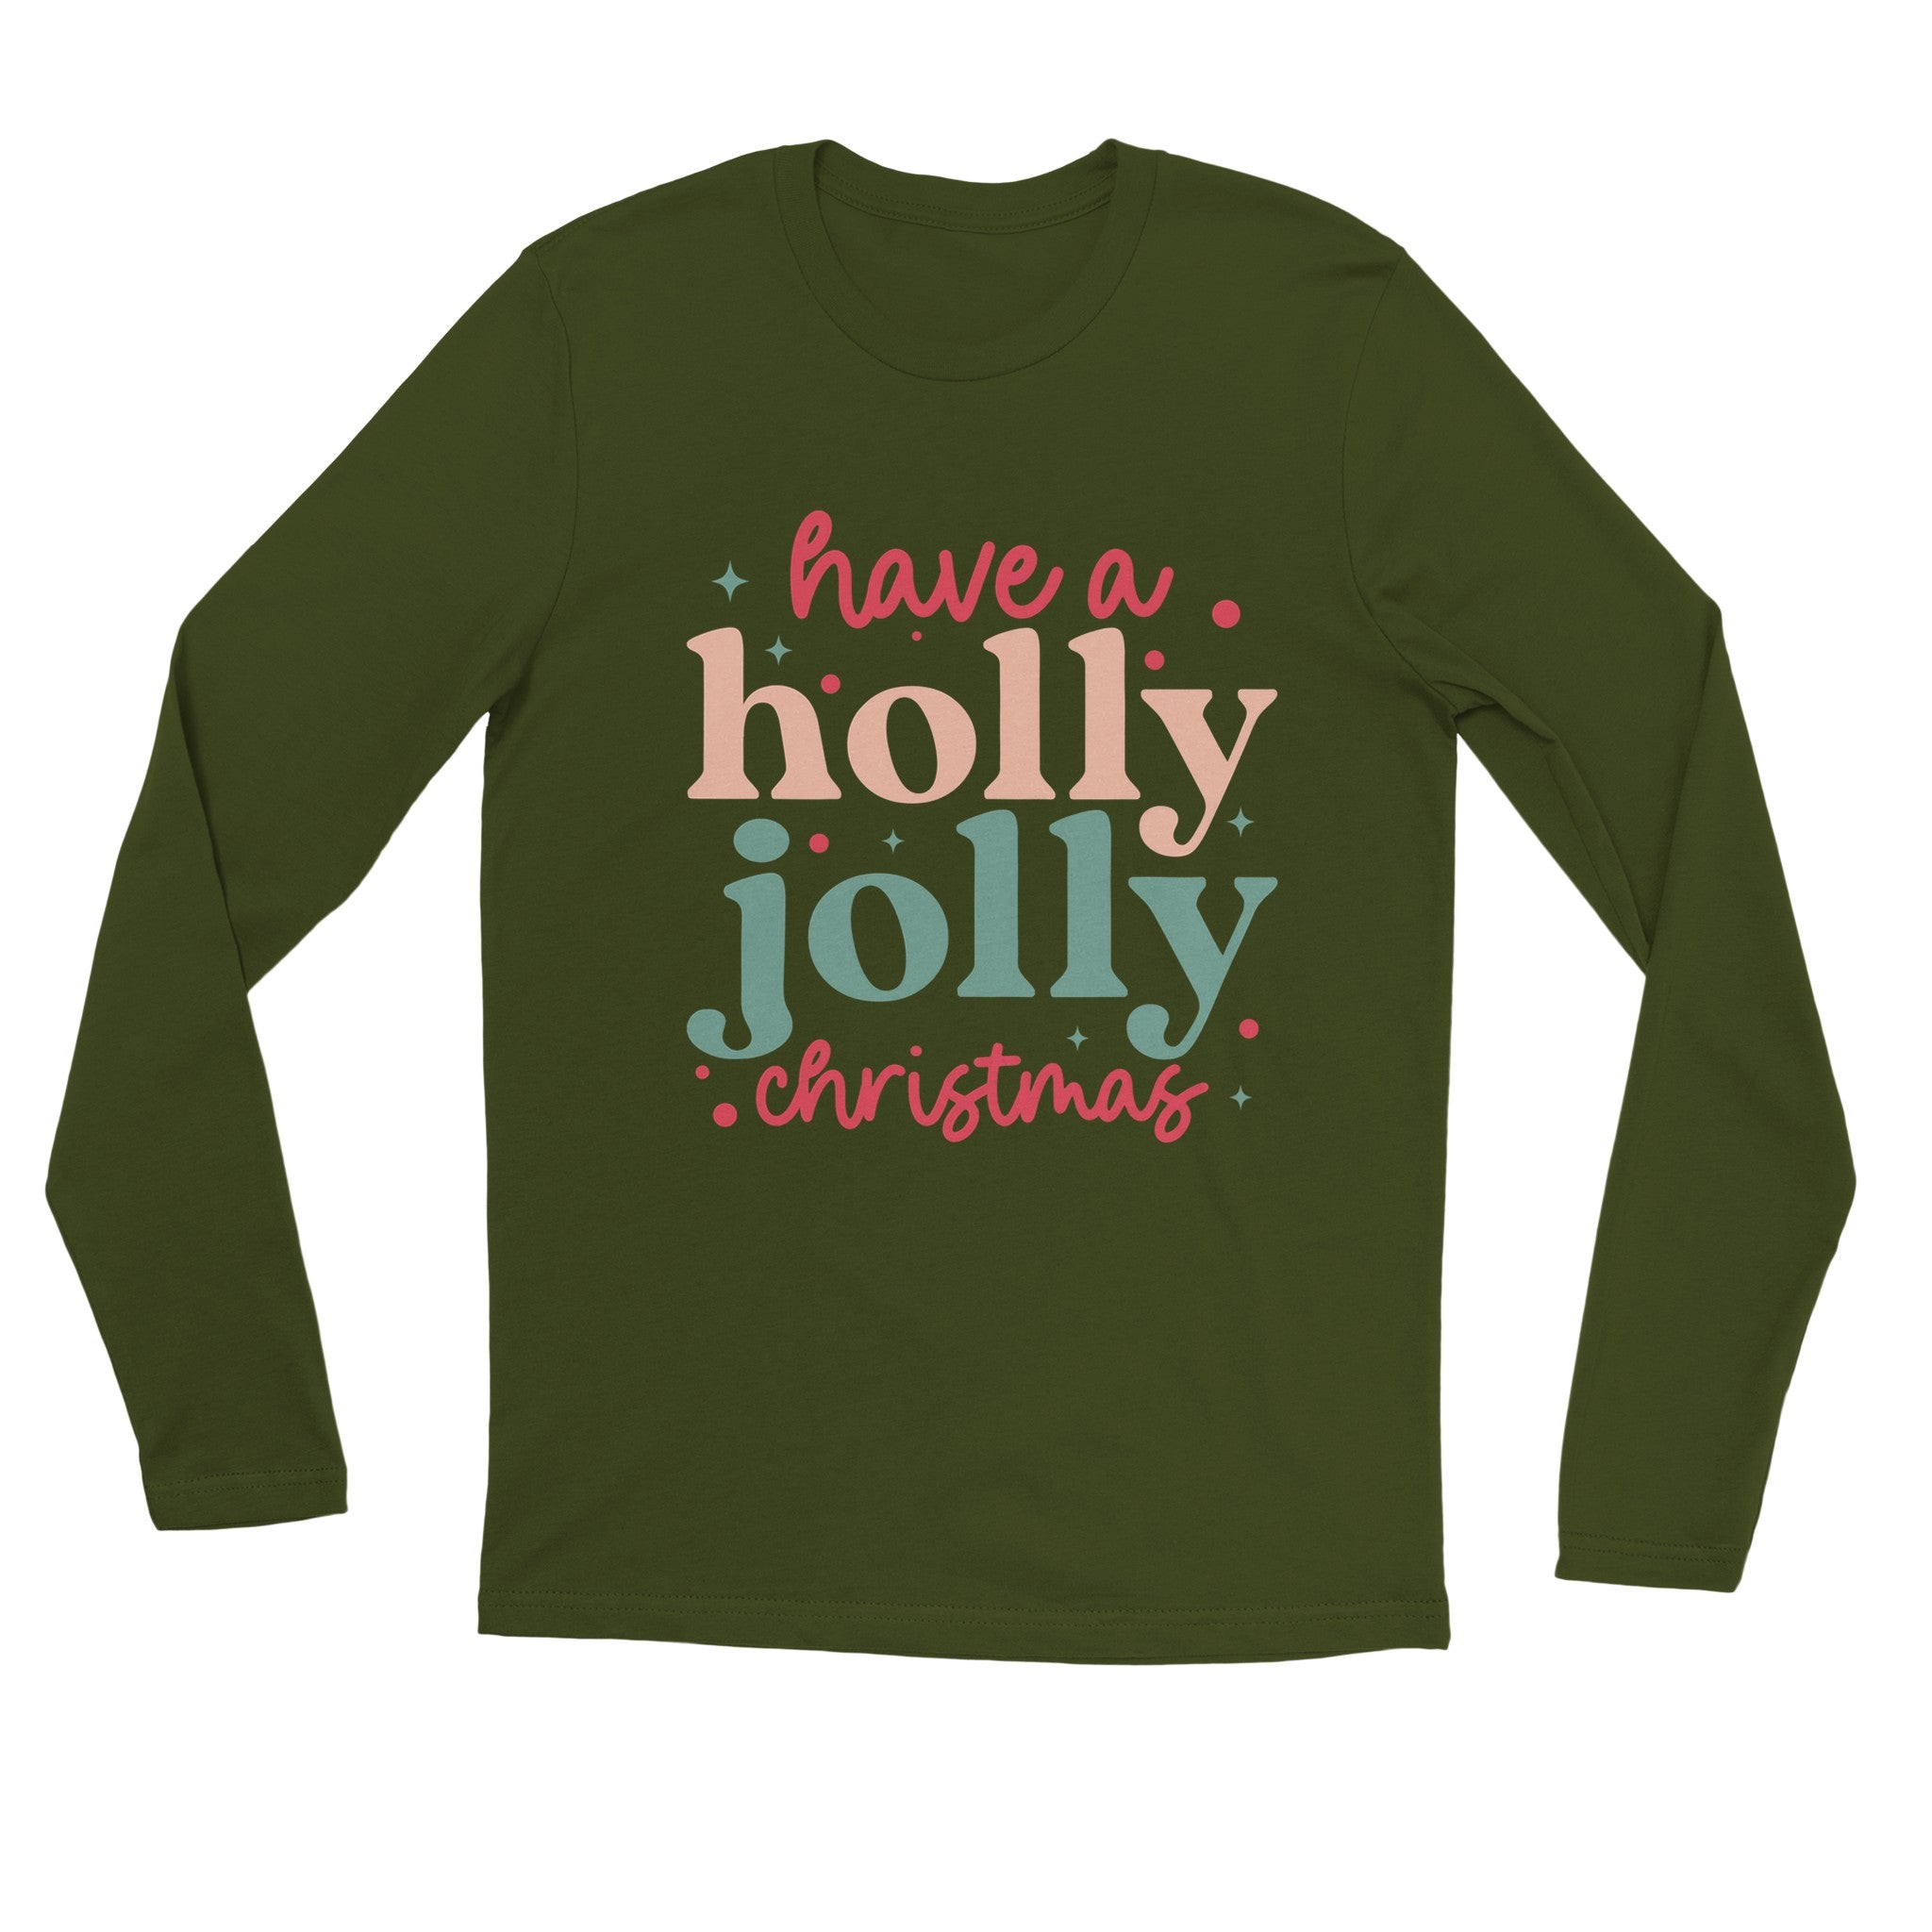 Holly Jolly Christmas Longsleeve T-shirt